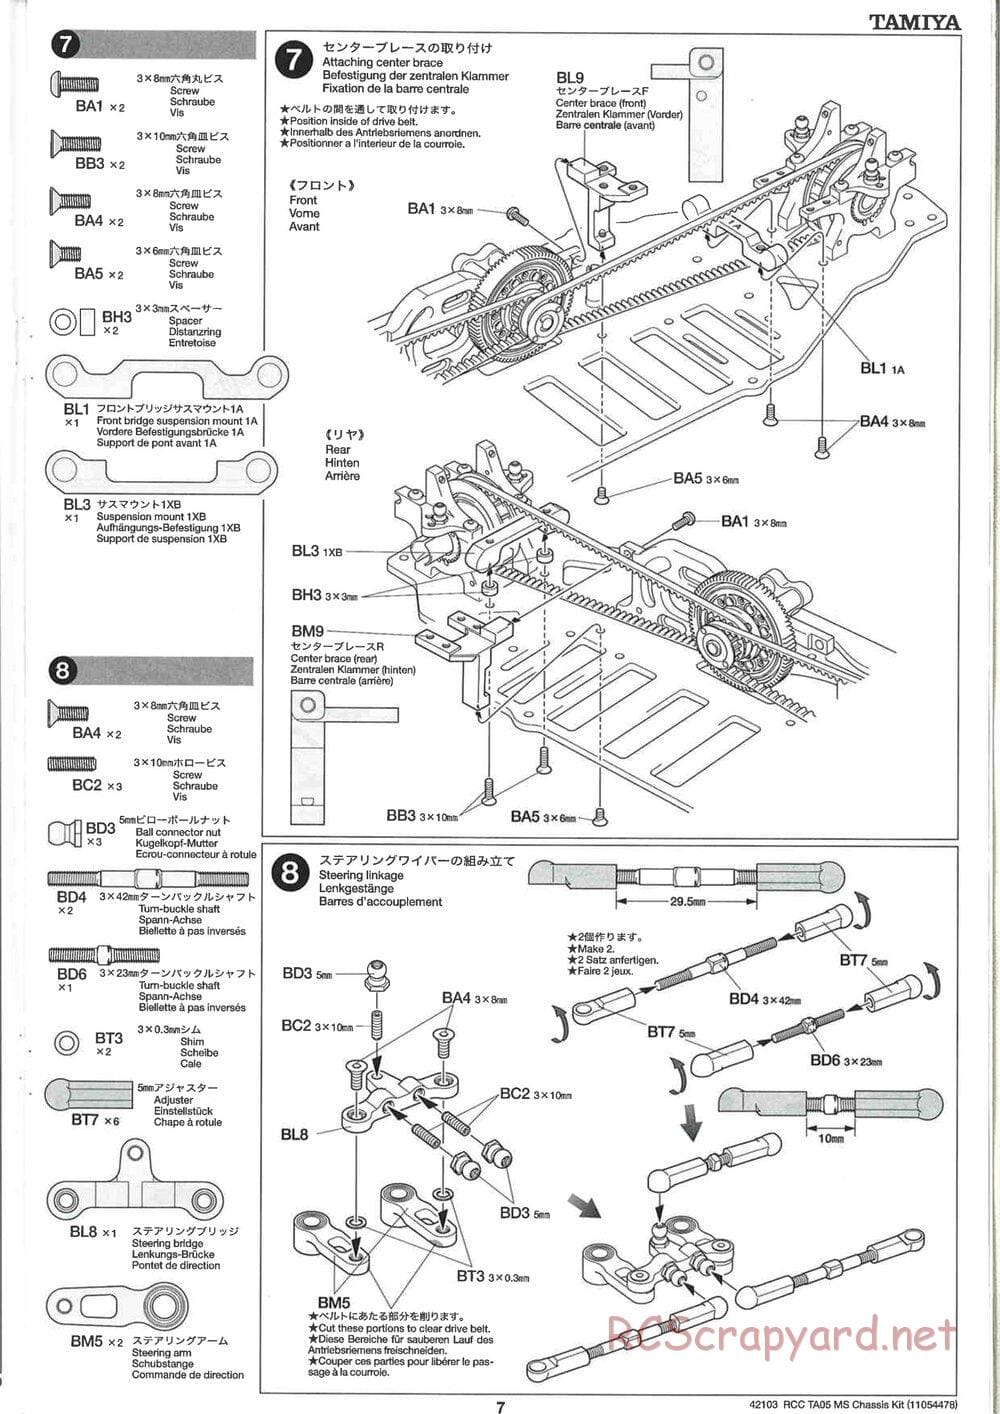 Tamiya - TA05 MS Chassis - Manual - Page 7